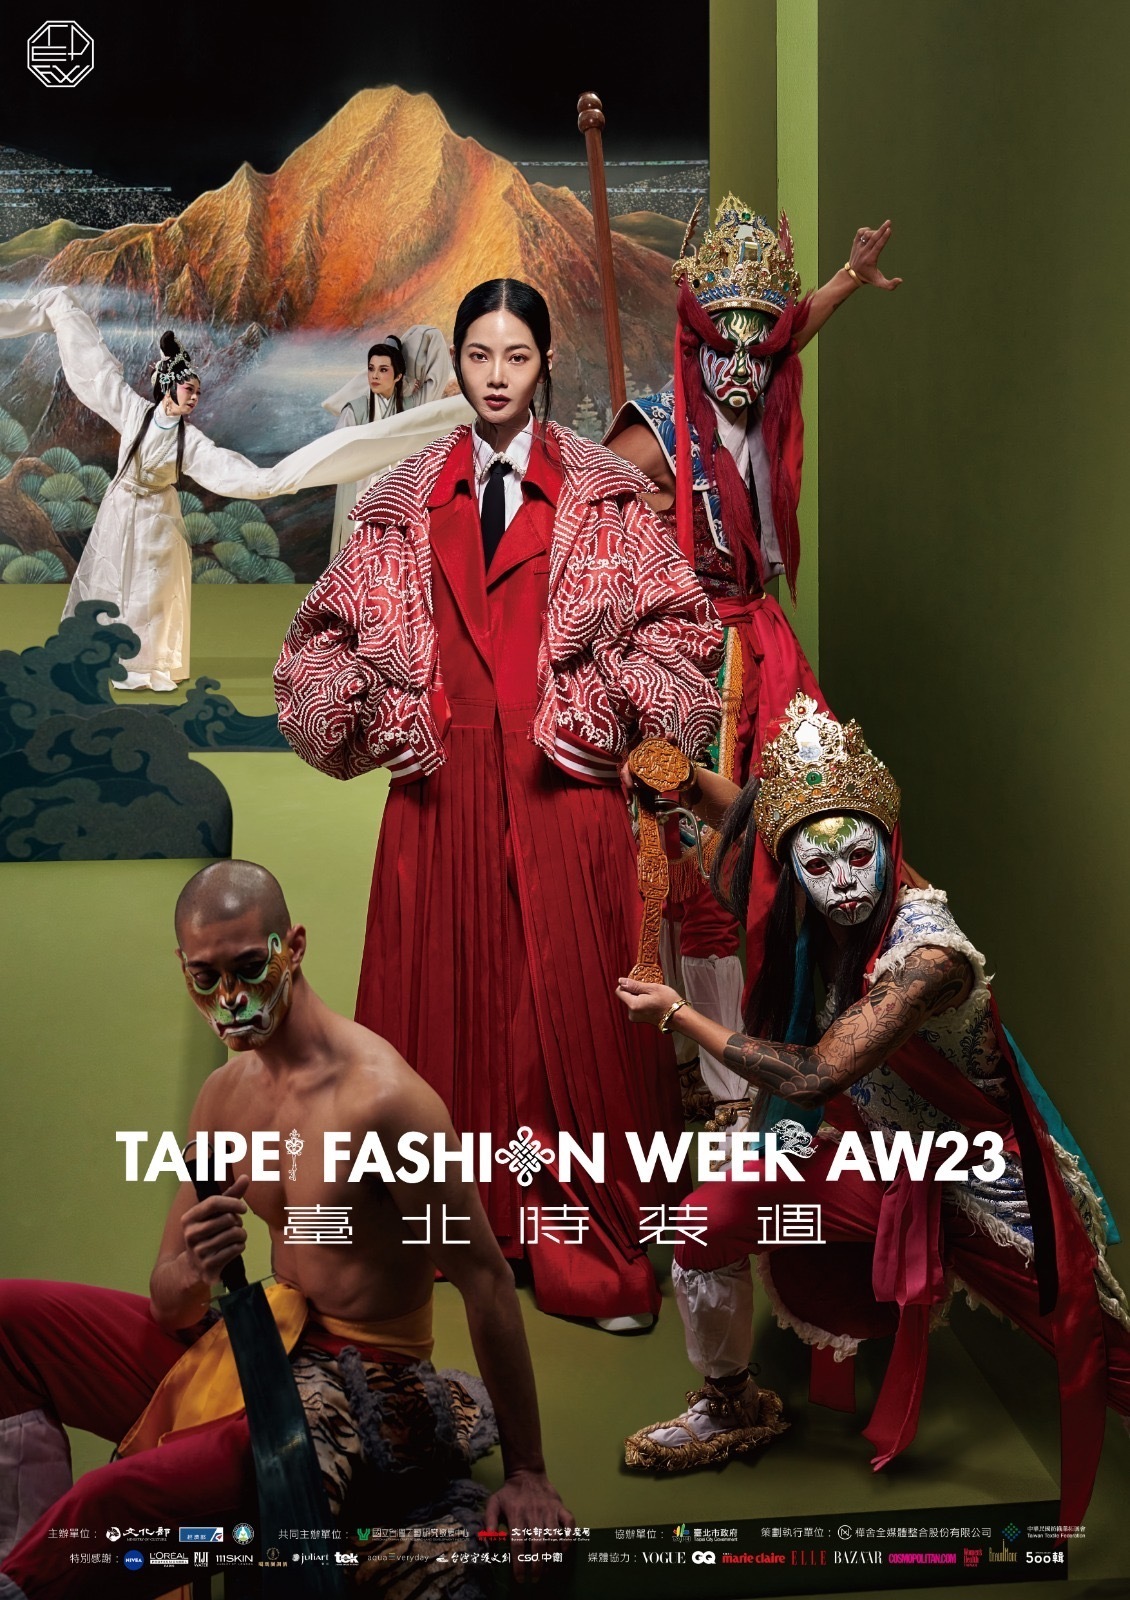 Các đại sứ hình ảnh của Taipei Fashion Week AW23 (Ảnh do Bộ Văn hóa cung cấp)